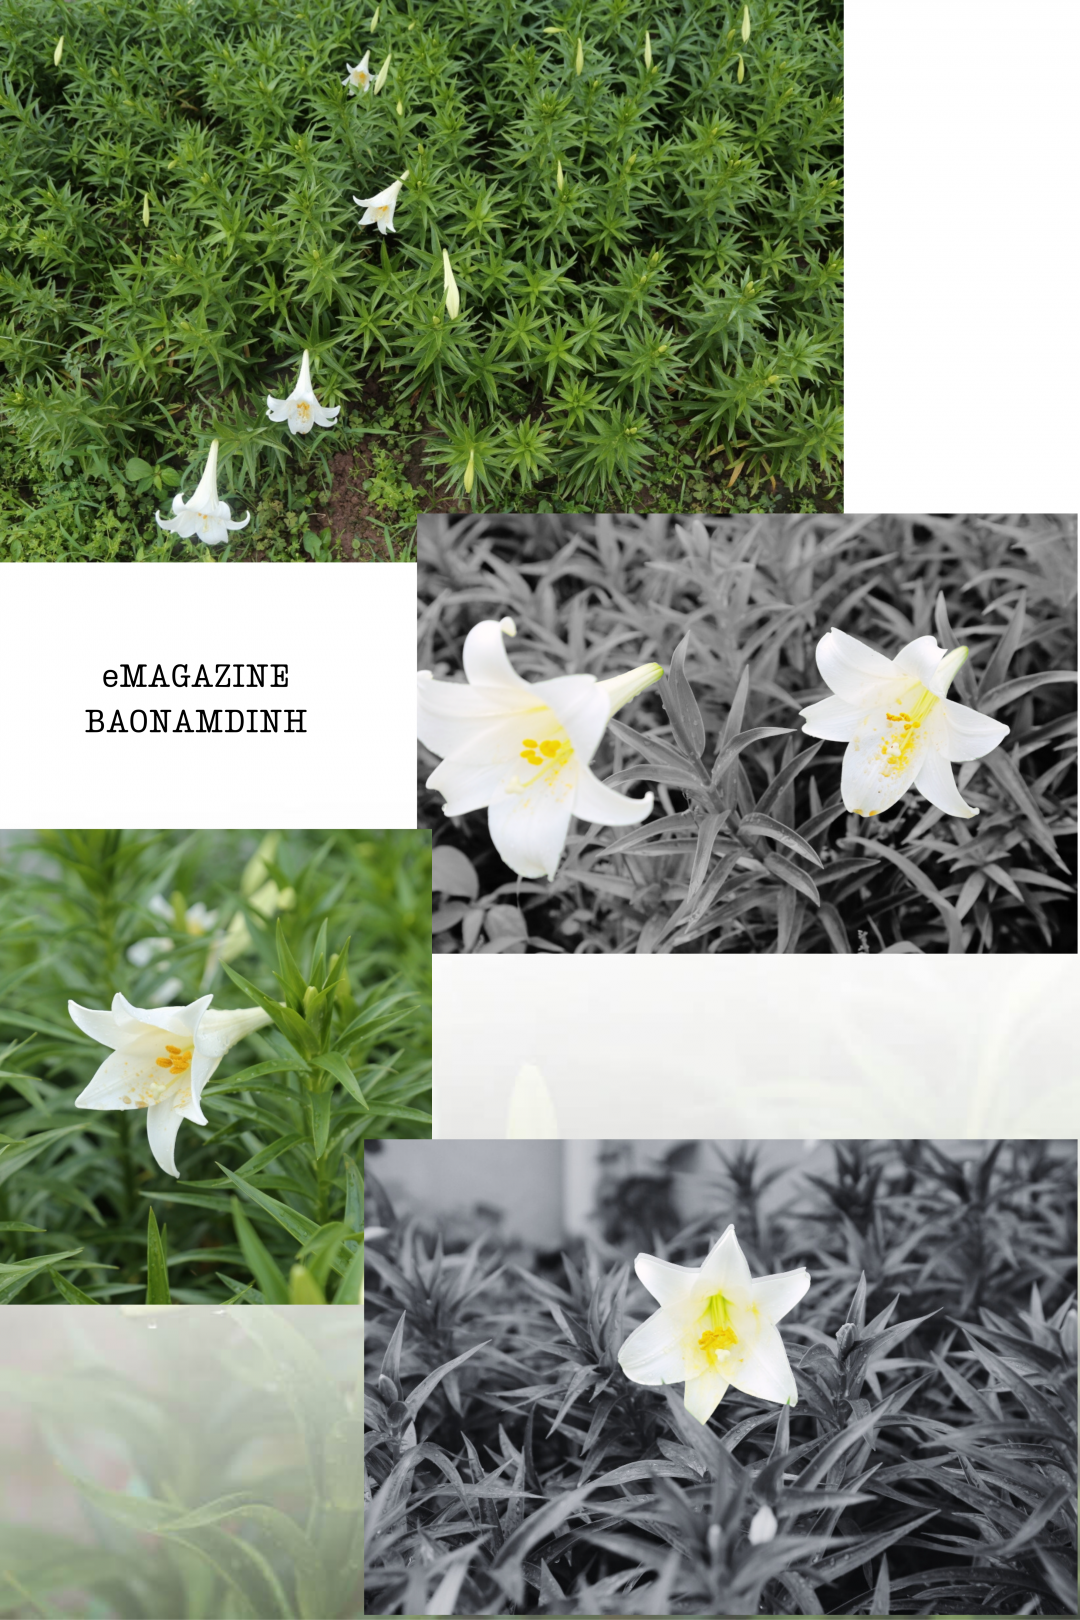 Hoa loa kèn – loài hoa đặc trưng của tháng Tư.